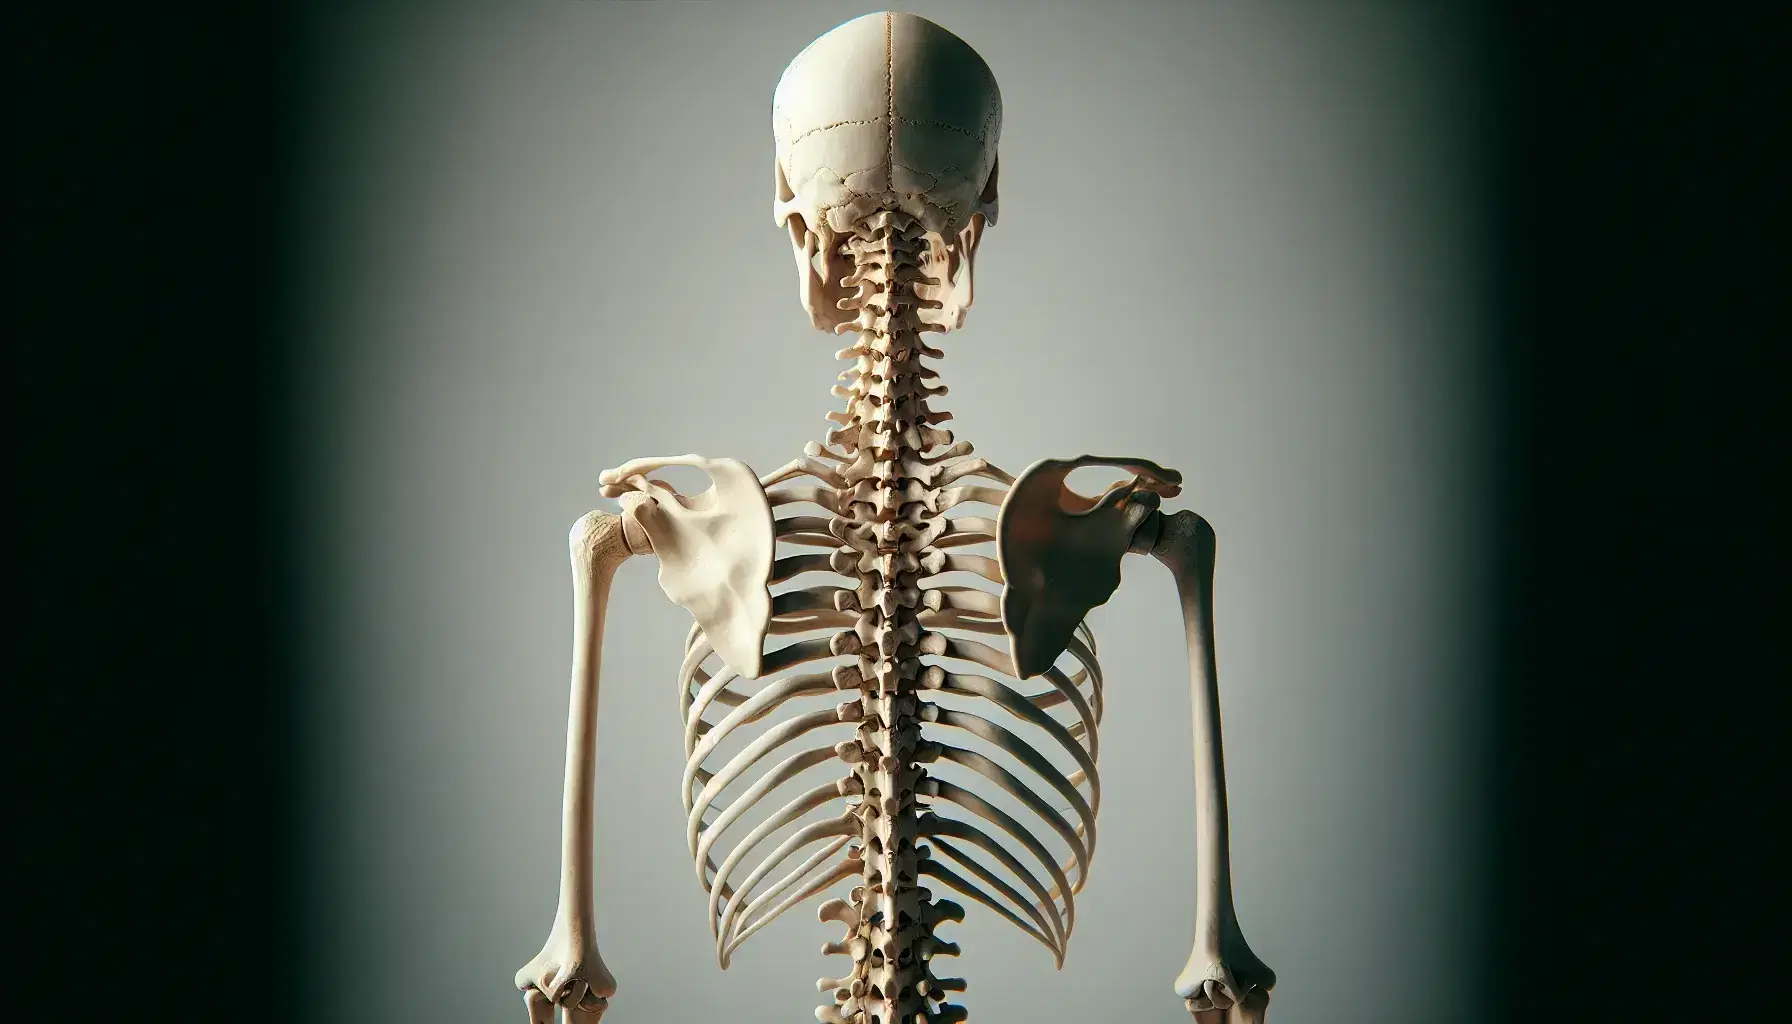 Esqueleto humano visto desde atrás destacando la columna vertebral con cráneo, costillas y pelvis visibles, sin tejidos blandos.